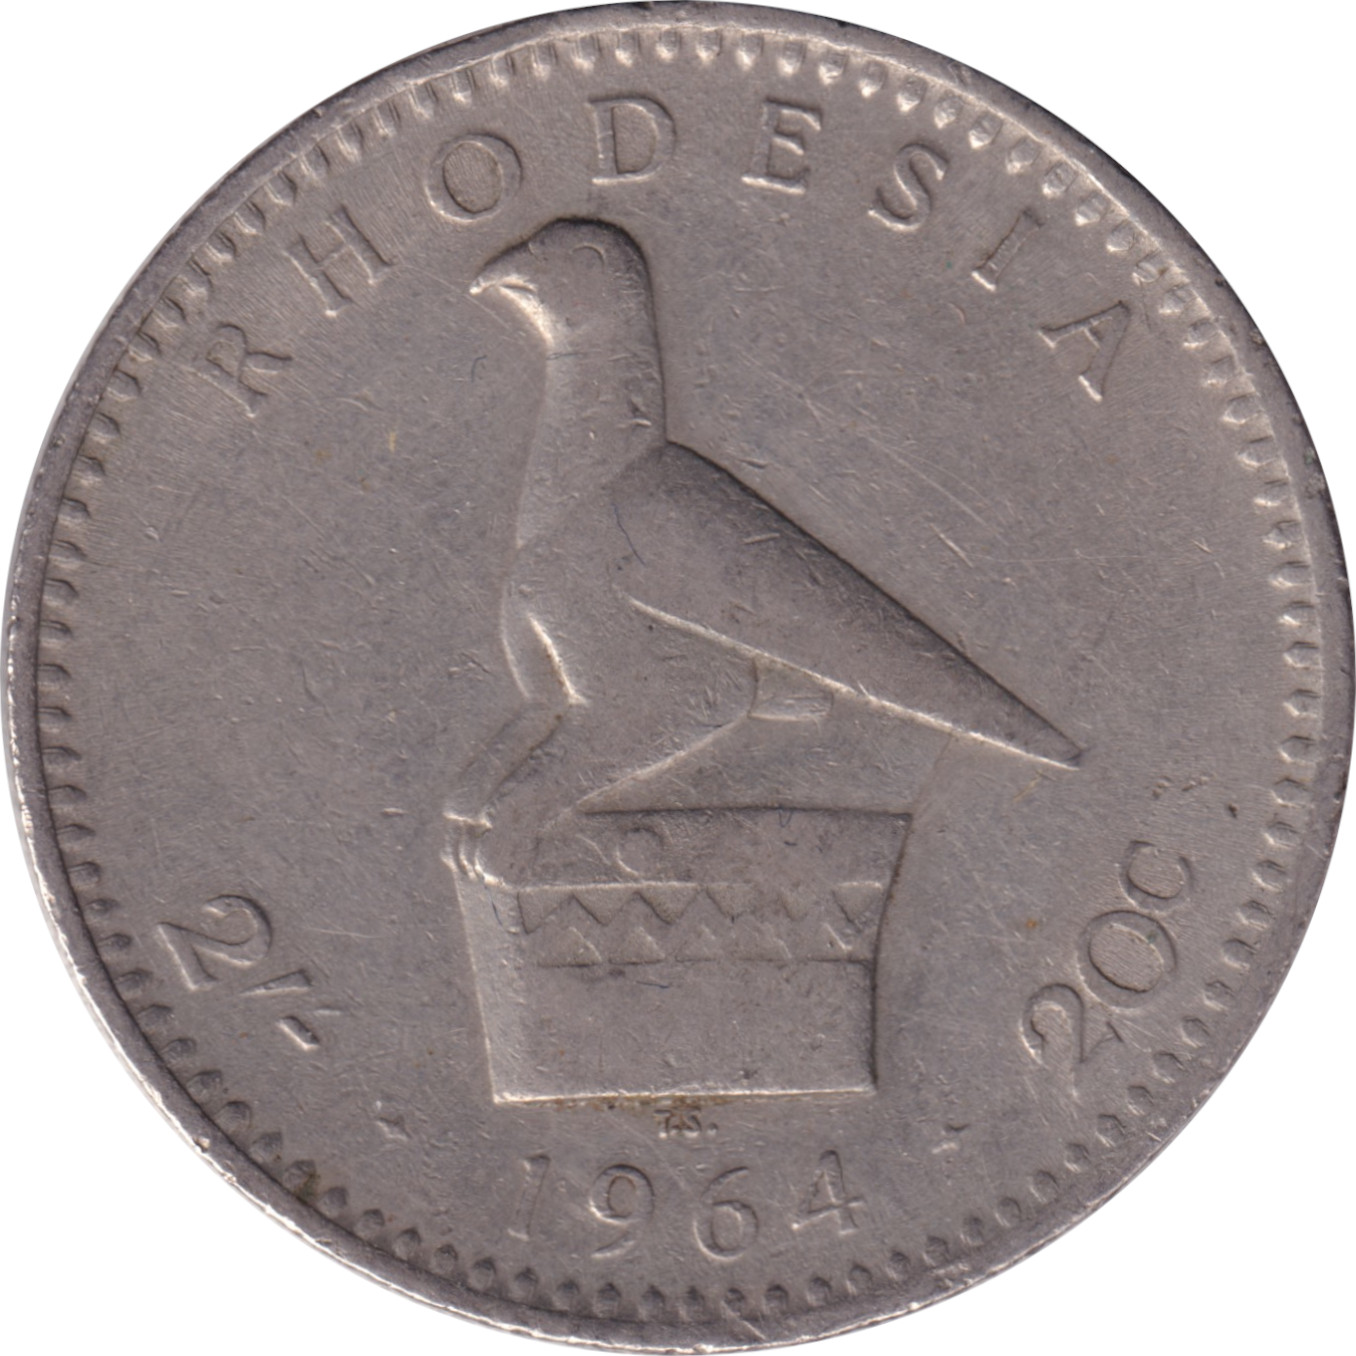 2 shillings - Elizabeth II